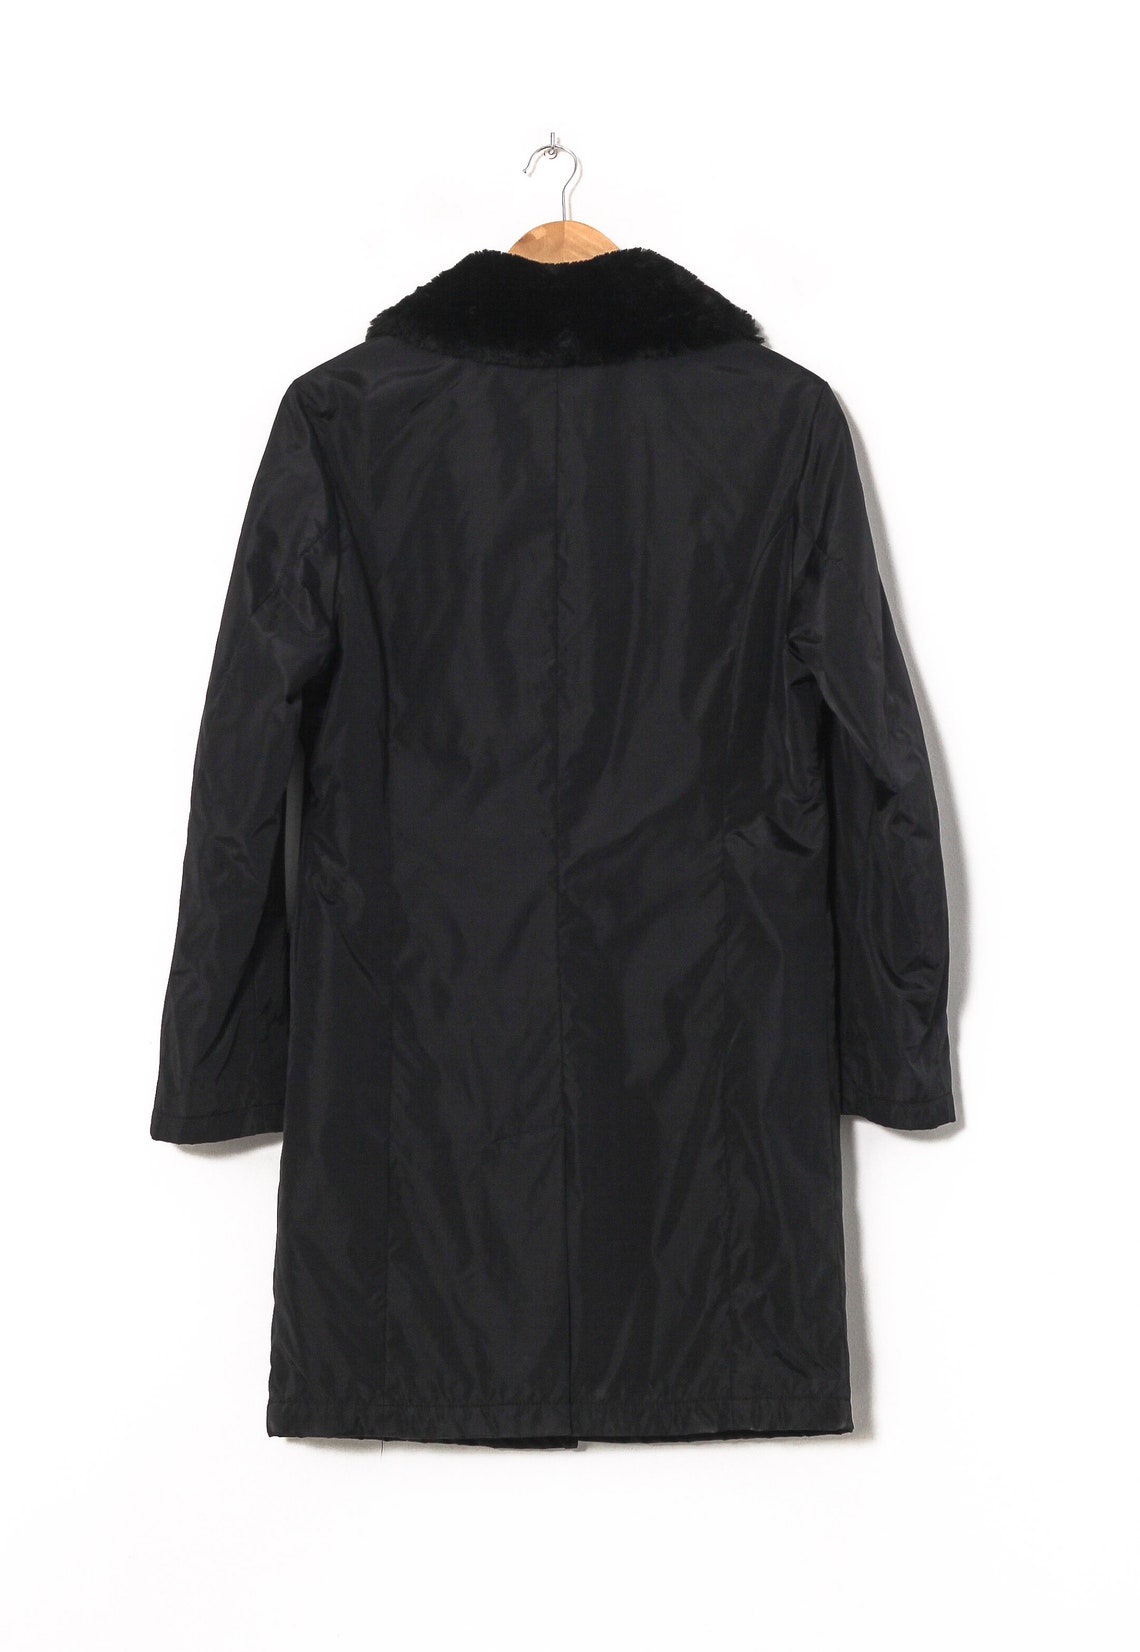 Women's THOMAS BURBERRY Over Coat Jacket Padded Black Size | Etsy